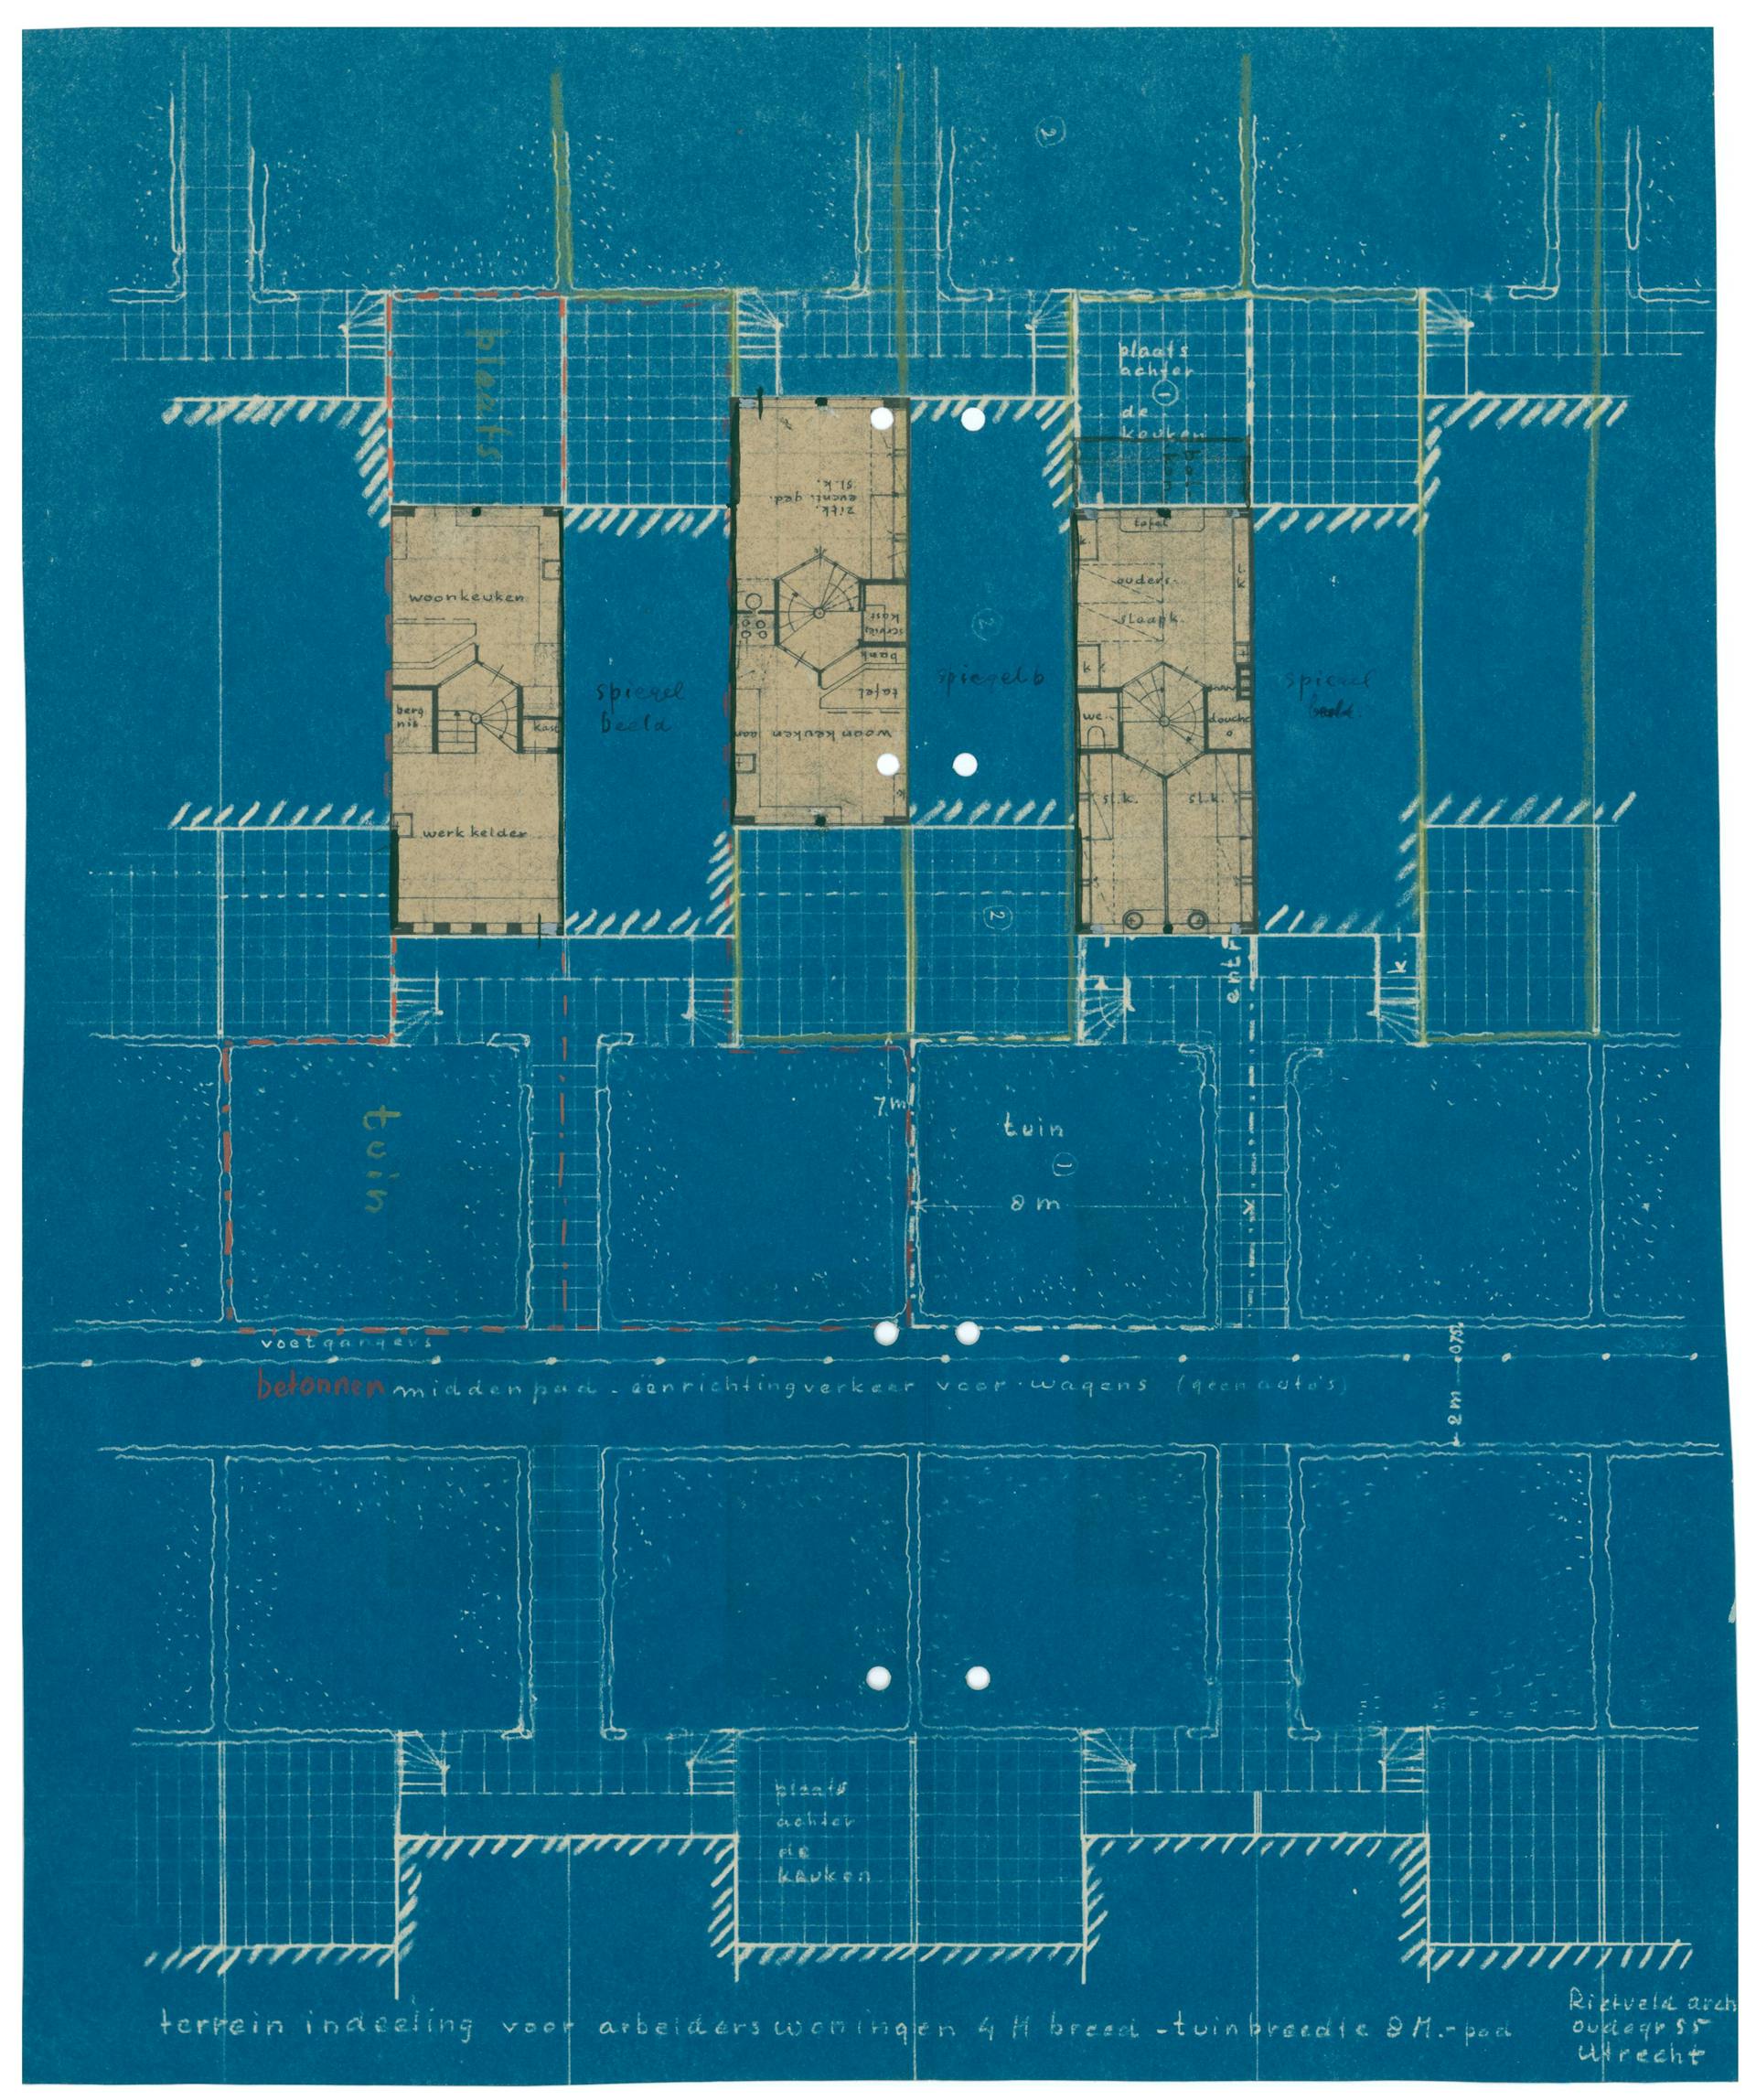 Een diazotypie werd soms gecombineerd met de blauwdruk binnen één ontwerptekening. Rietveld knipte plattegronden van de natte cel (badkamer en keuken) uit diazotypieën en plakte deze op deze blauwdruk. Hiermee creëerde hij een mengvorm van twee… 